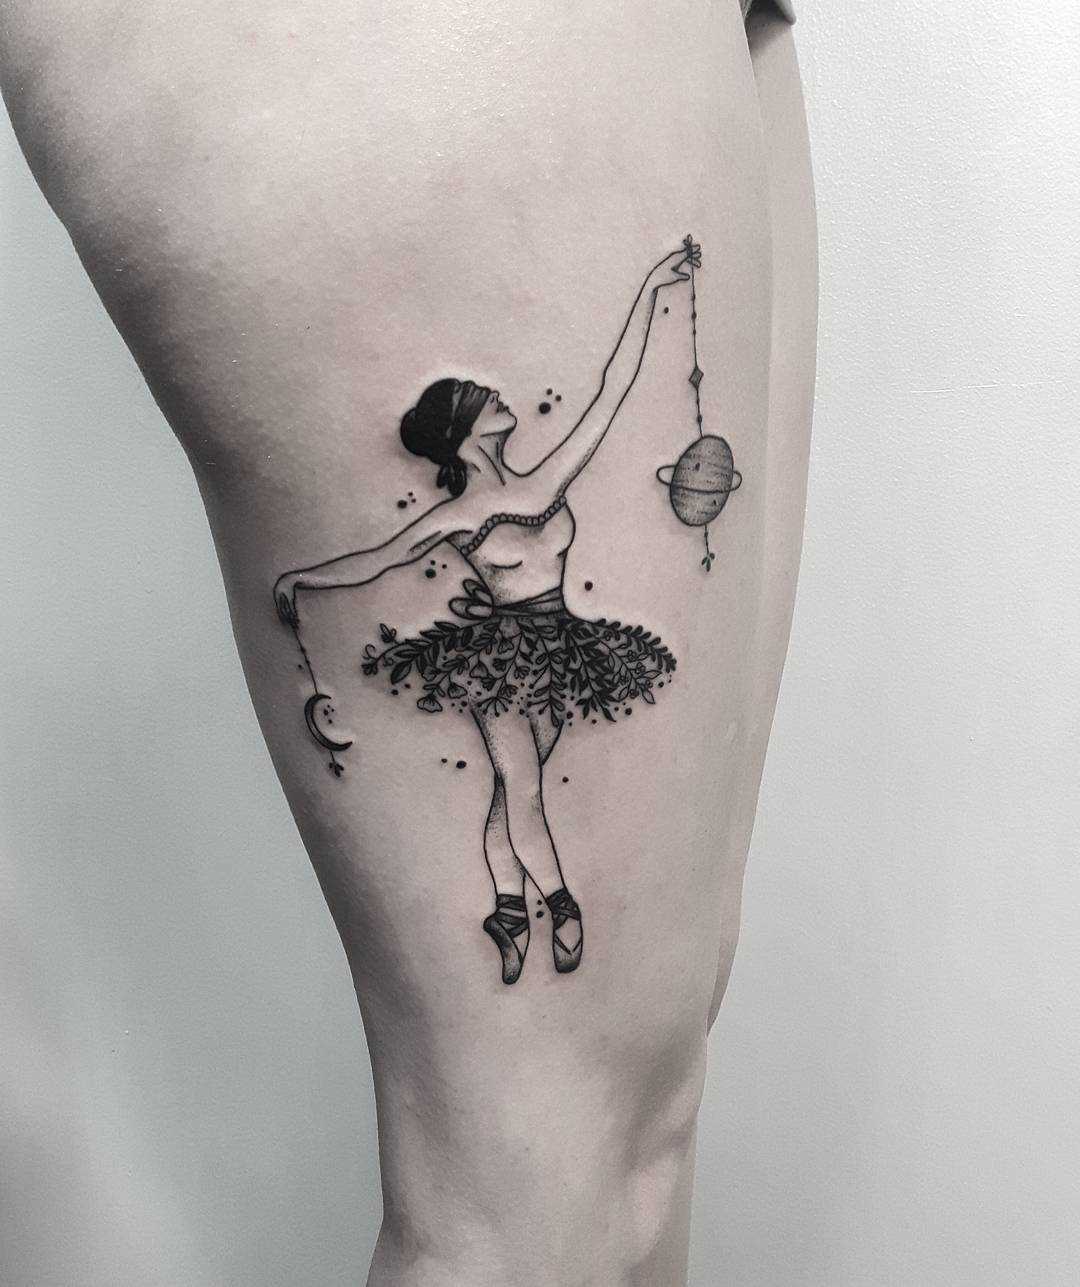 Tatuagem de uma bailarina no quadril da mulher